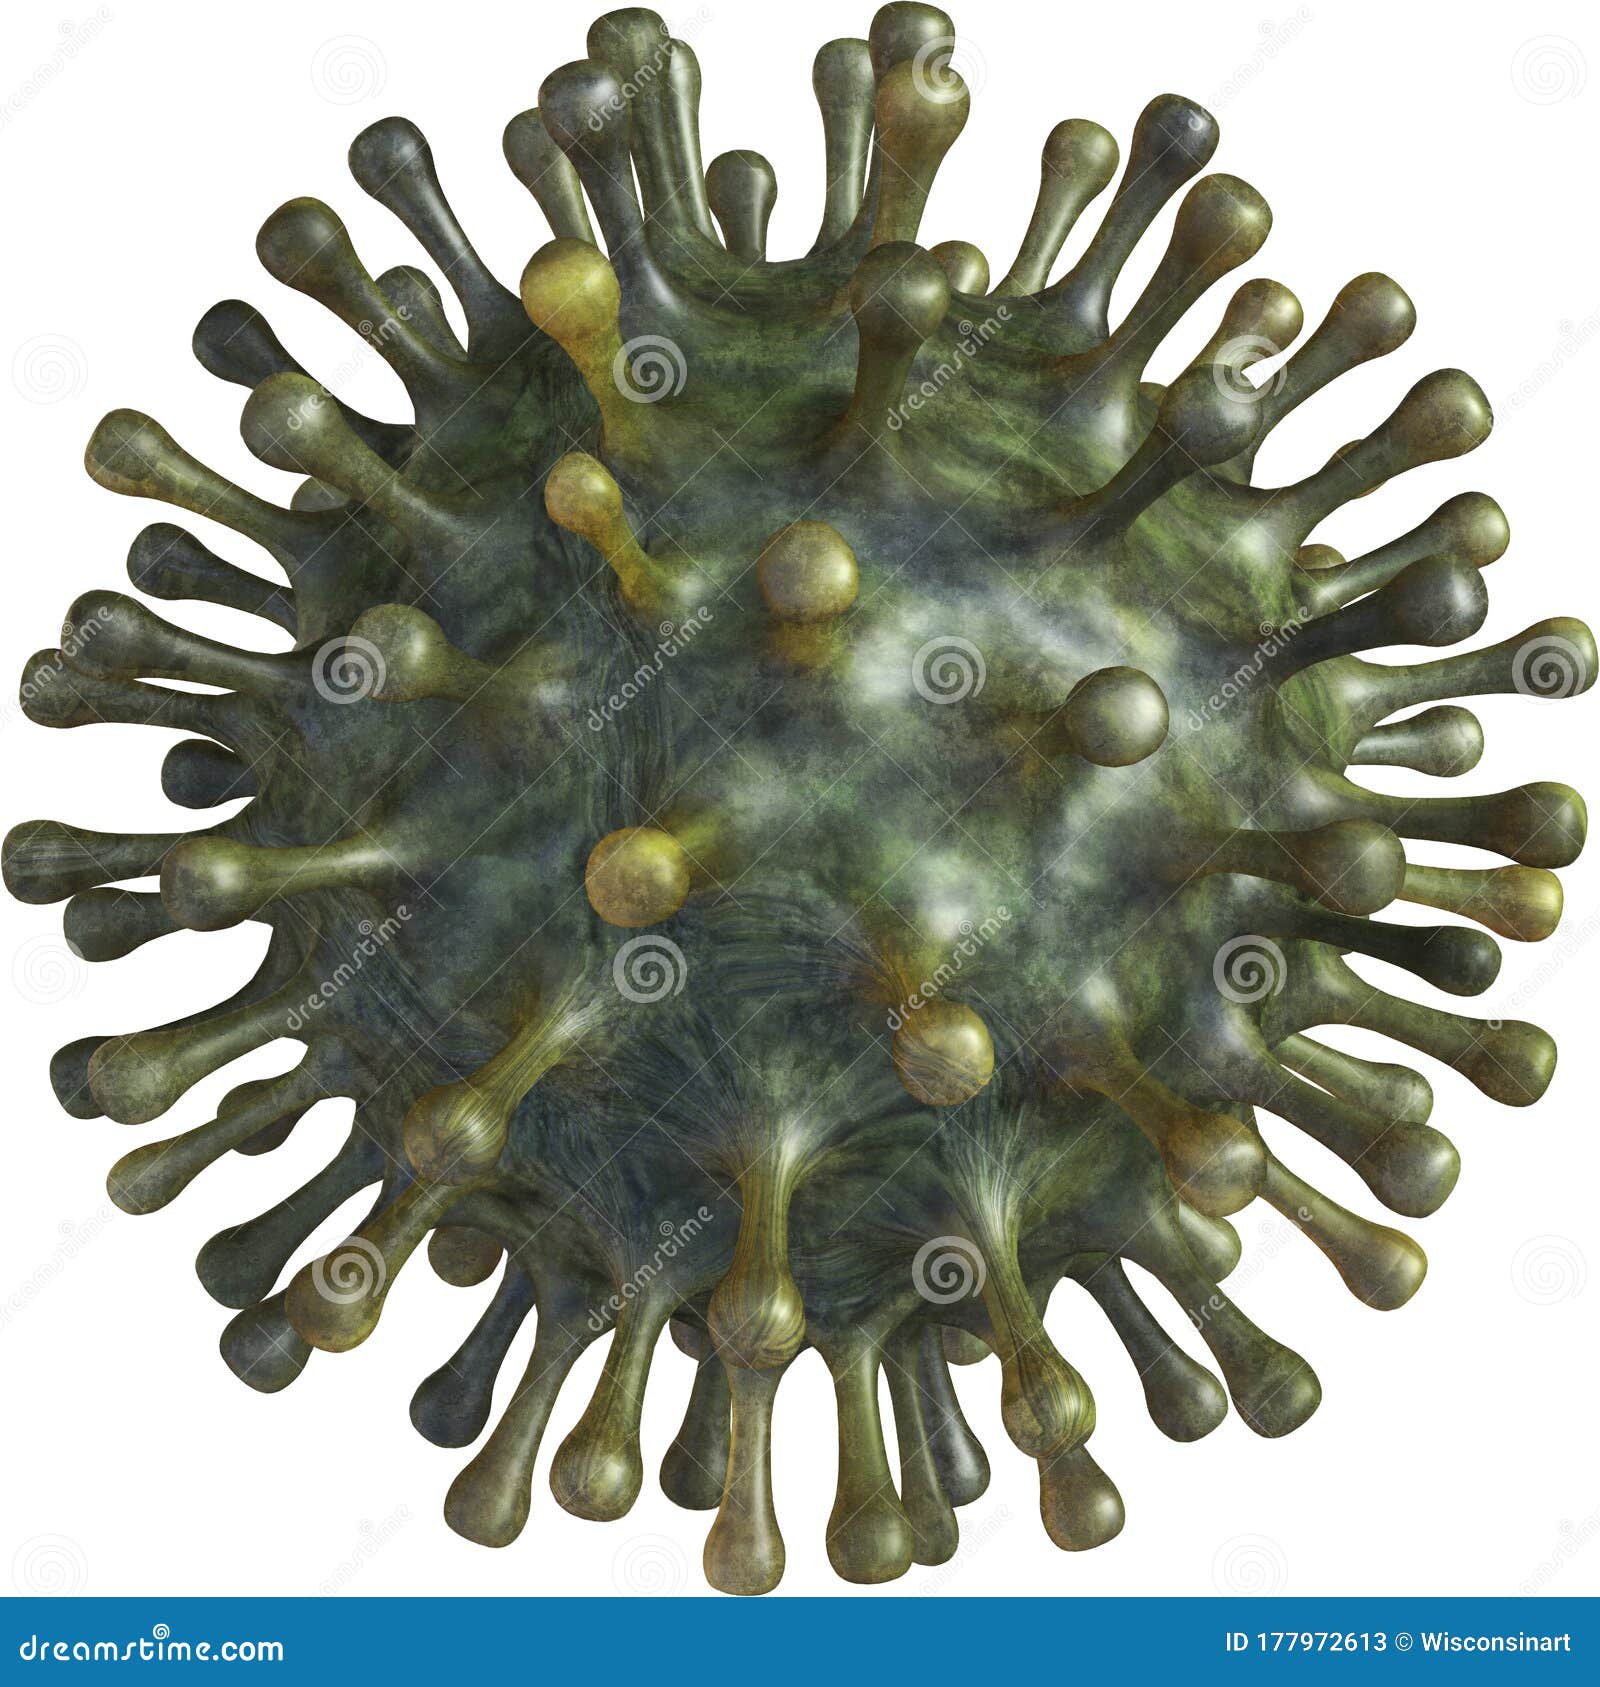 coronavirus, covid-19, virus, bug, , pandemic